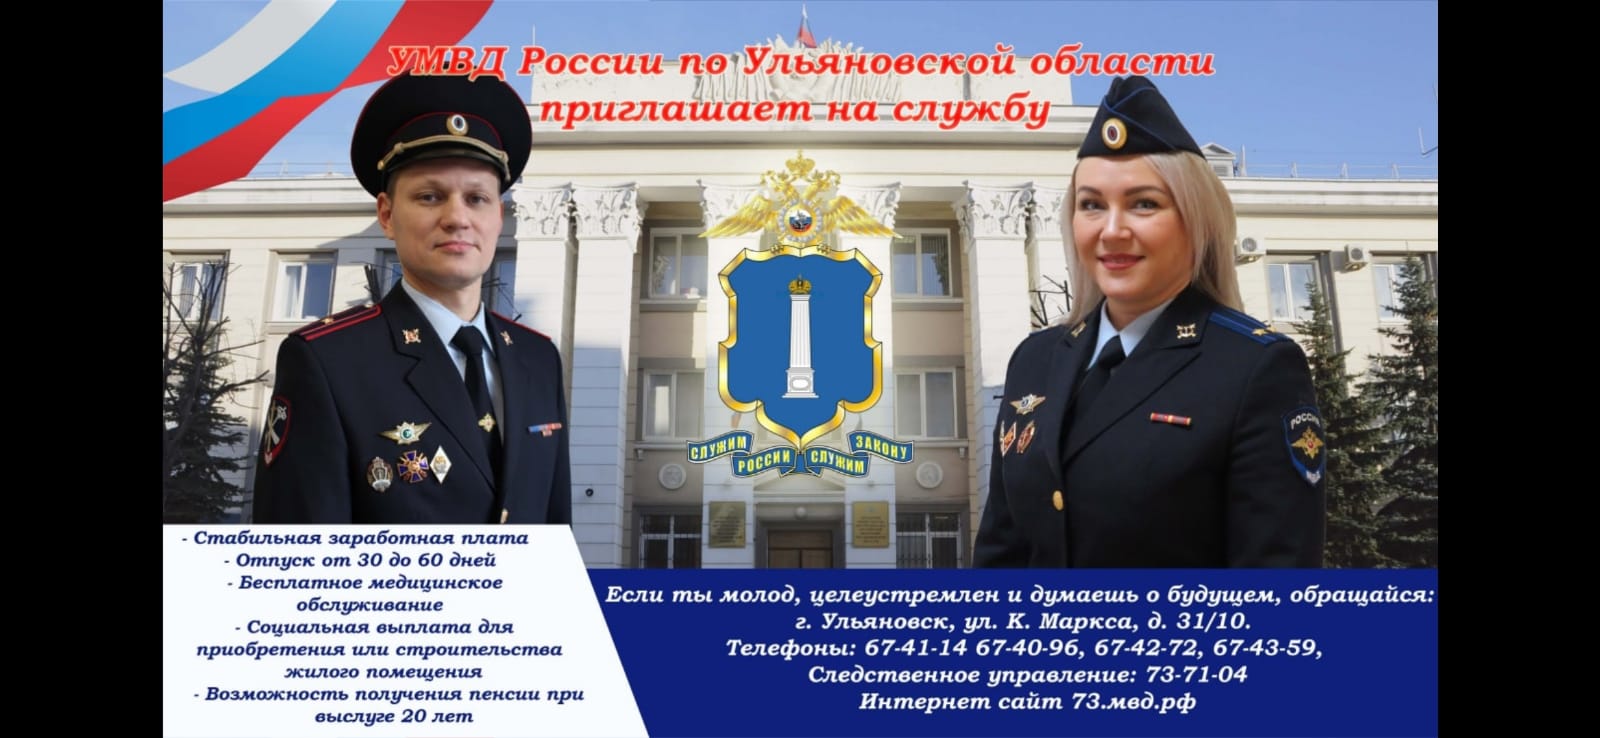 МО МВД России «Инзенский»  приглашает на службу в органы внутренних дел Российской Федерации.